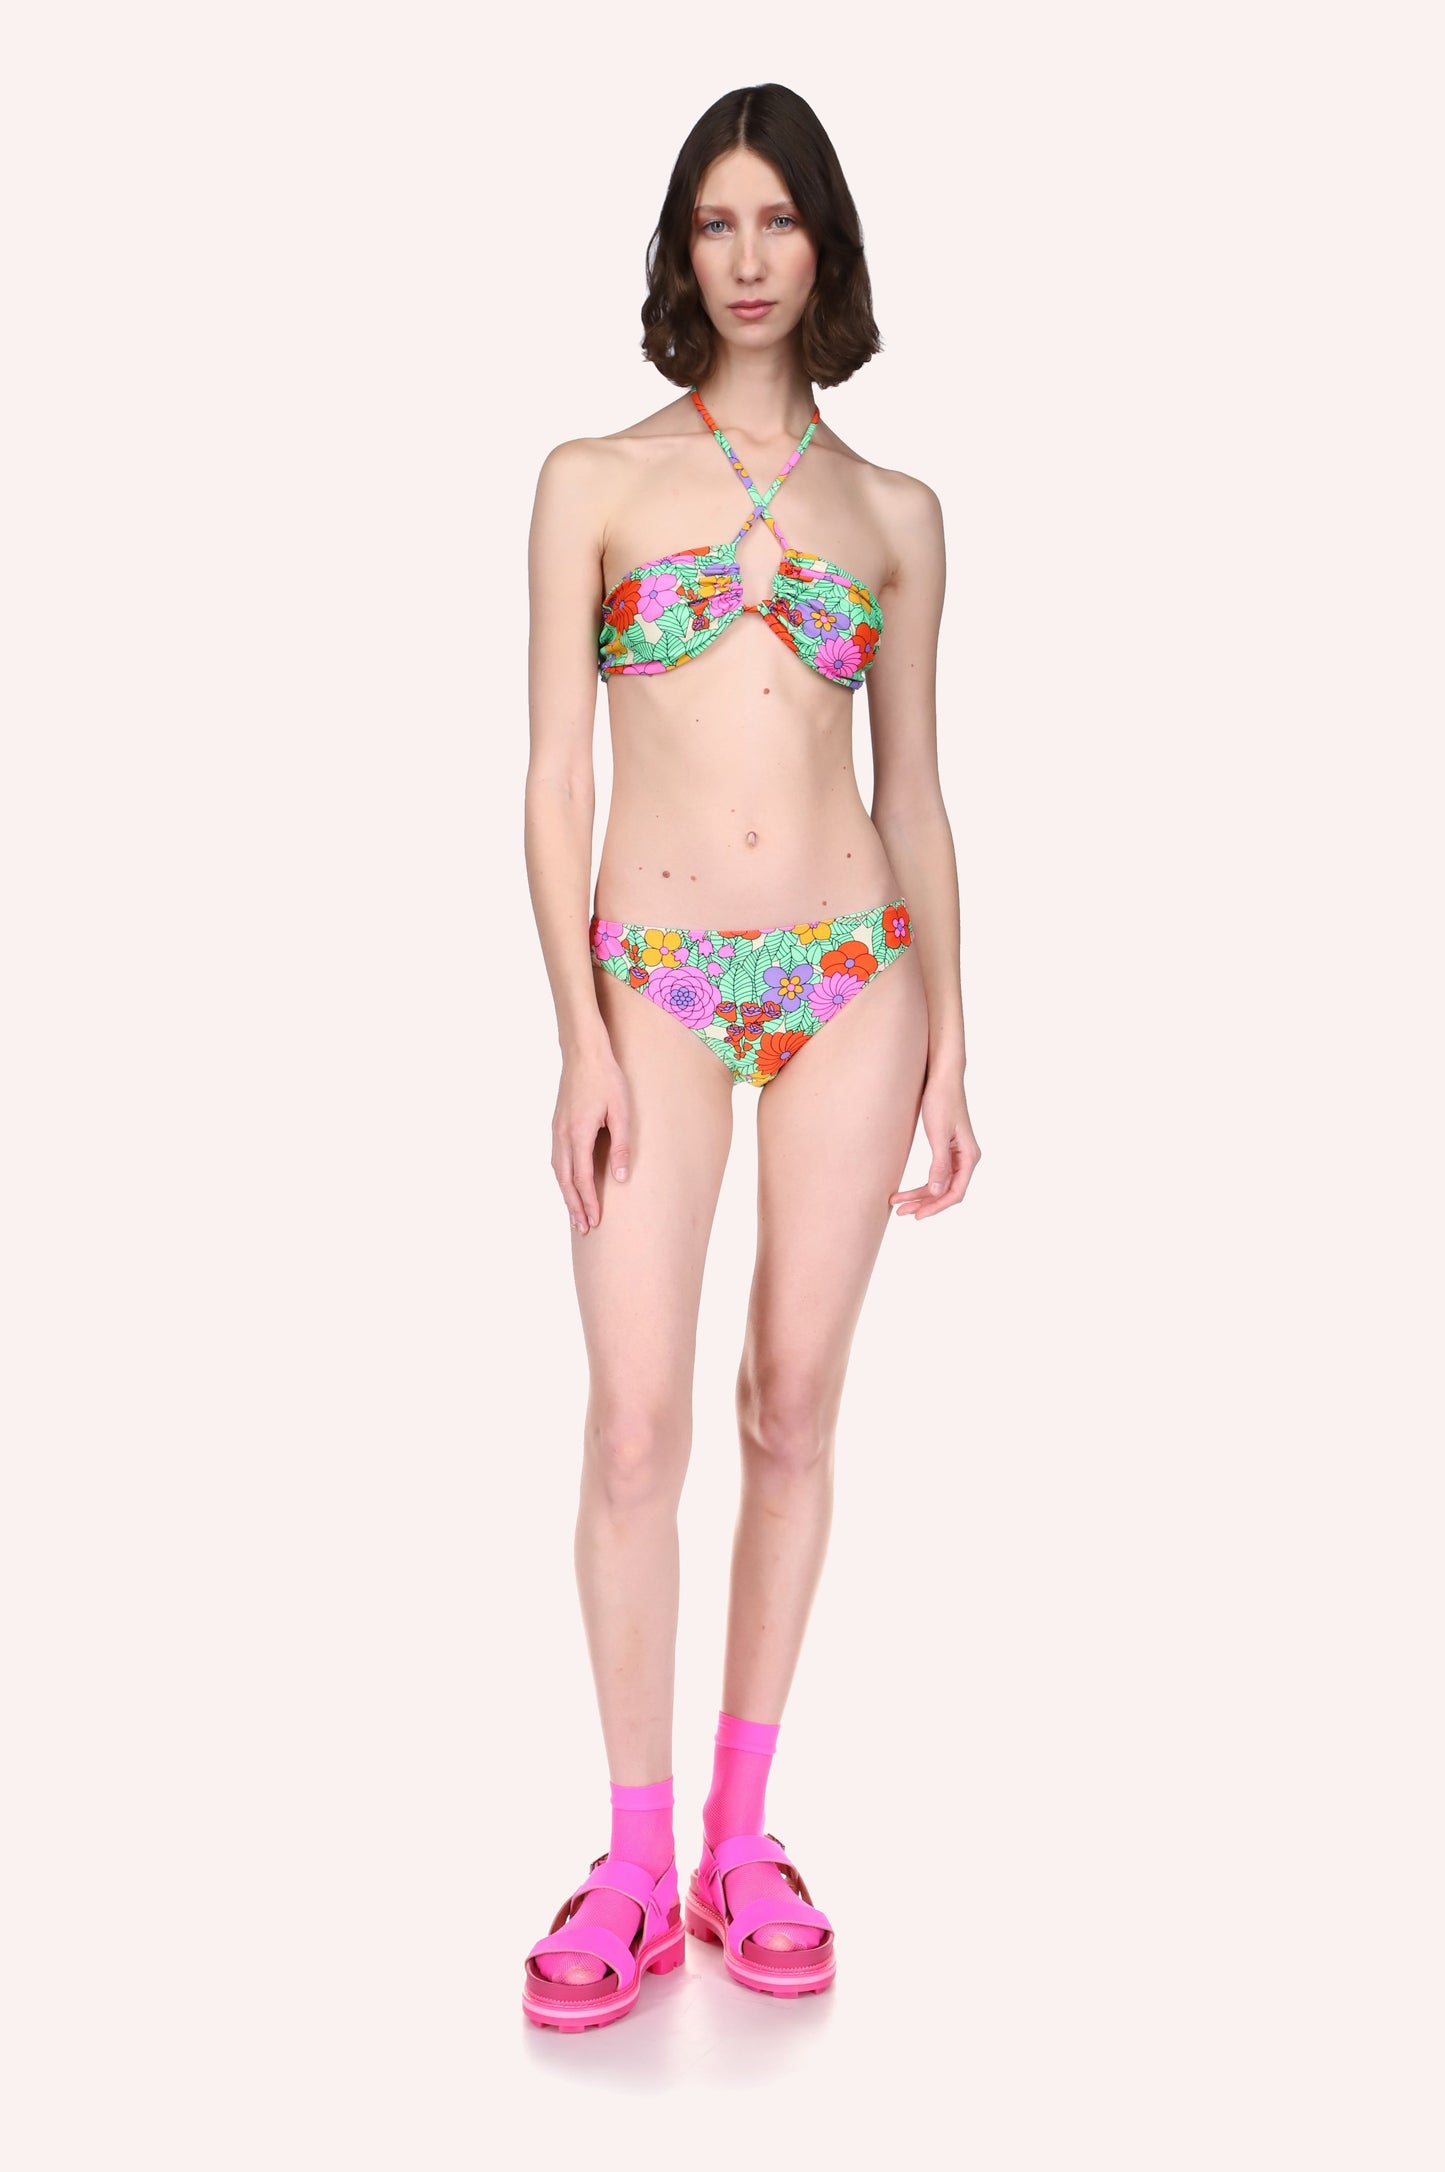 Beckoning Blossoms String Bikini Set, floral design in green & orange